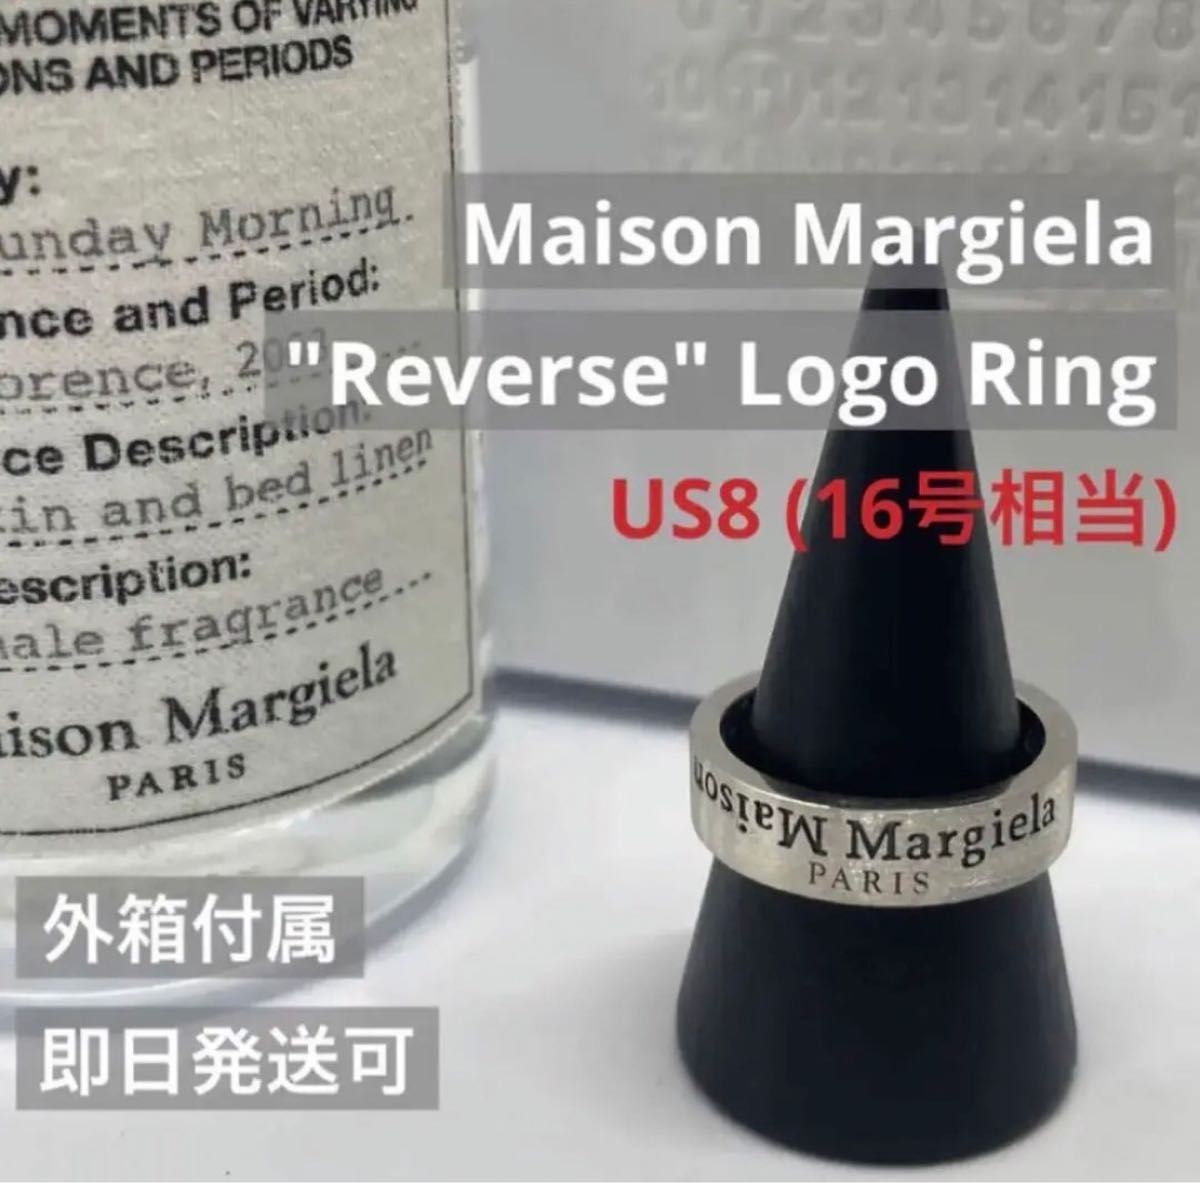 【新品外箱あり】Maison Margiela メゾンマルジェラ リバース ロゴ リング 反転ロゴ 16号相当